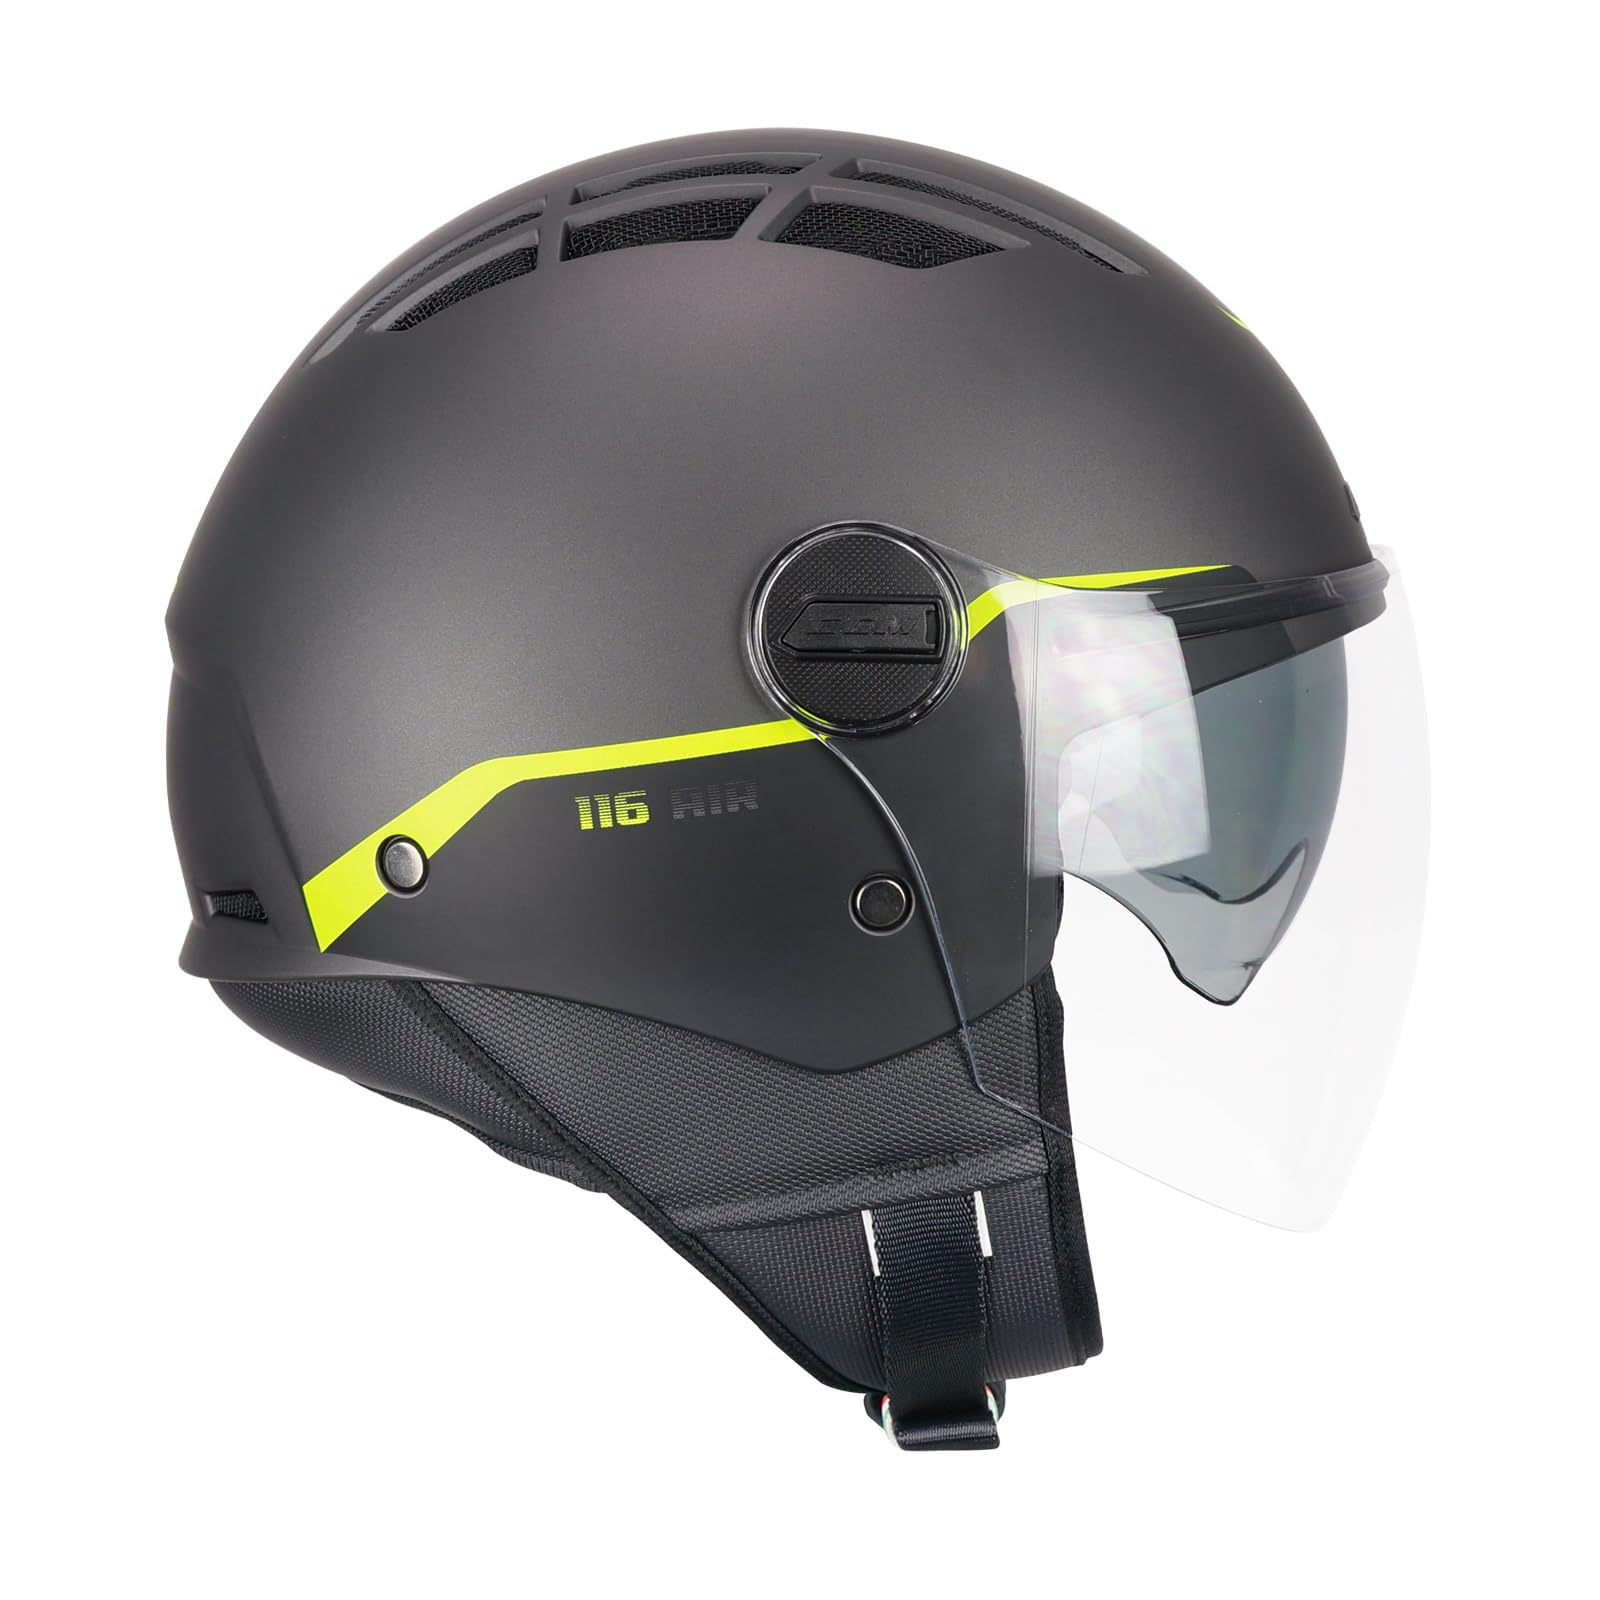 CGM Helm mit offenem Gesicht, 116G Air Bio, Graphit, Neongelb, matt, XXXL (65-66 cm) von CGM